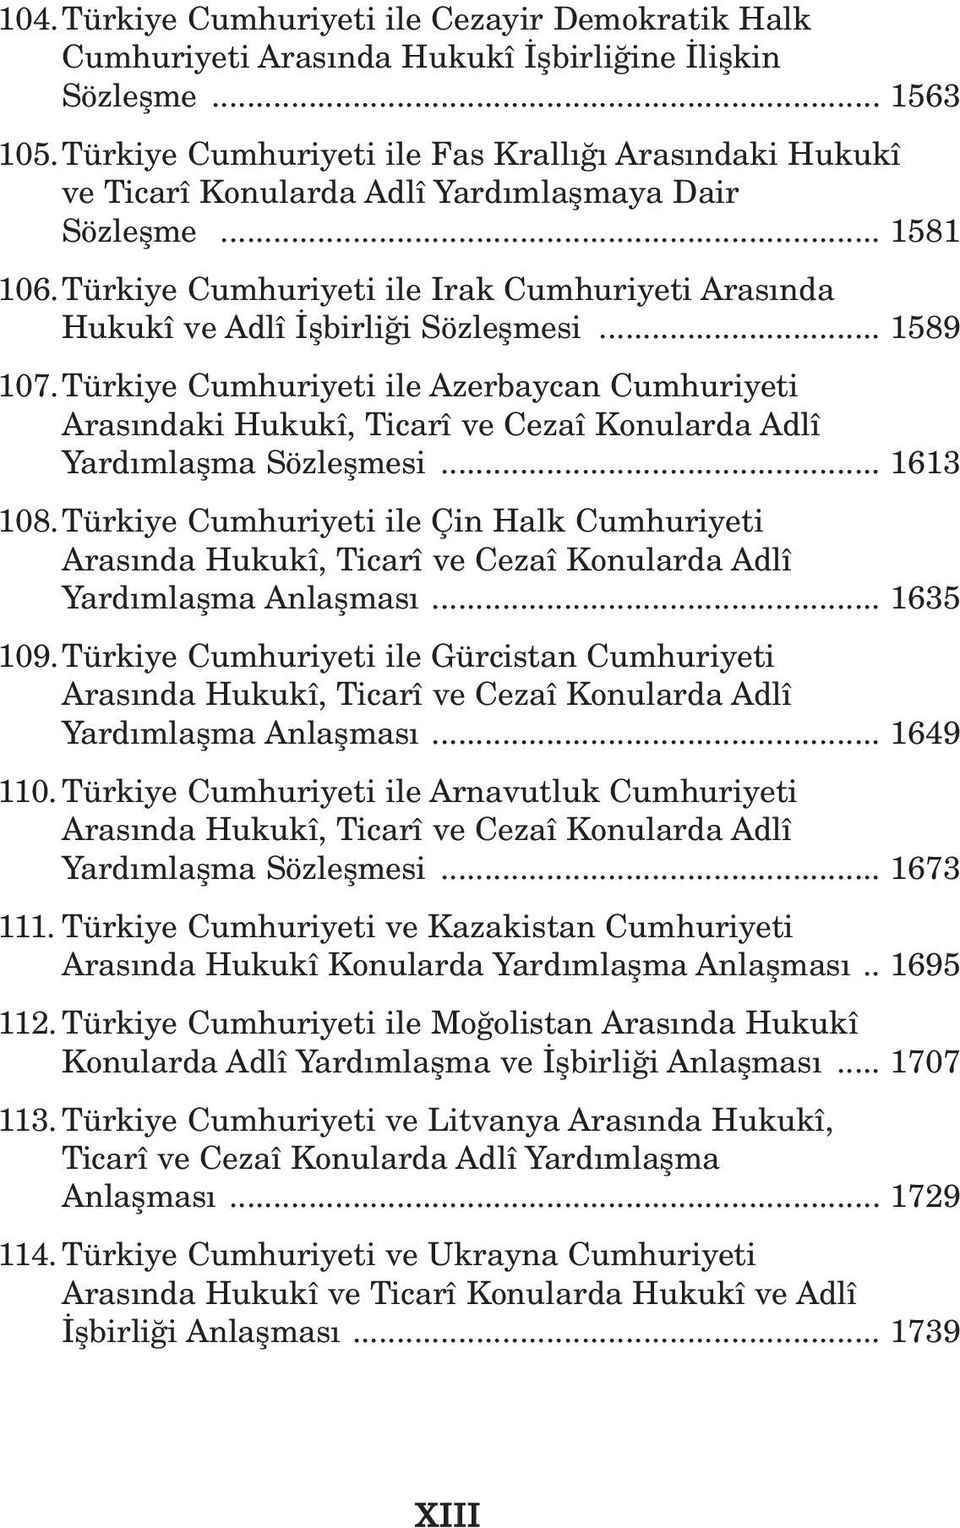 Türkiye Cumhuriyeti ile Irak Cumhuriyeti Aras nda Hukukî ve Adlî flbirli i Sözleflmesi... 1589 107.